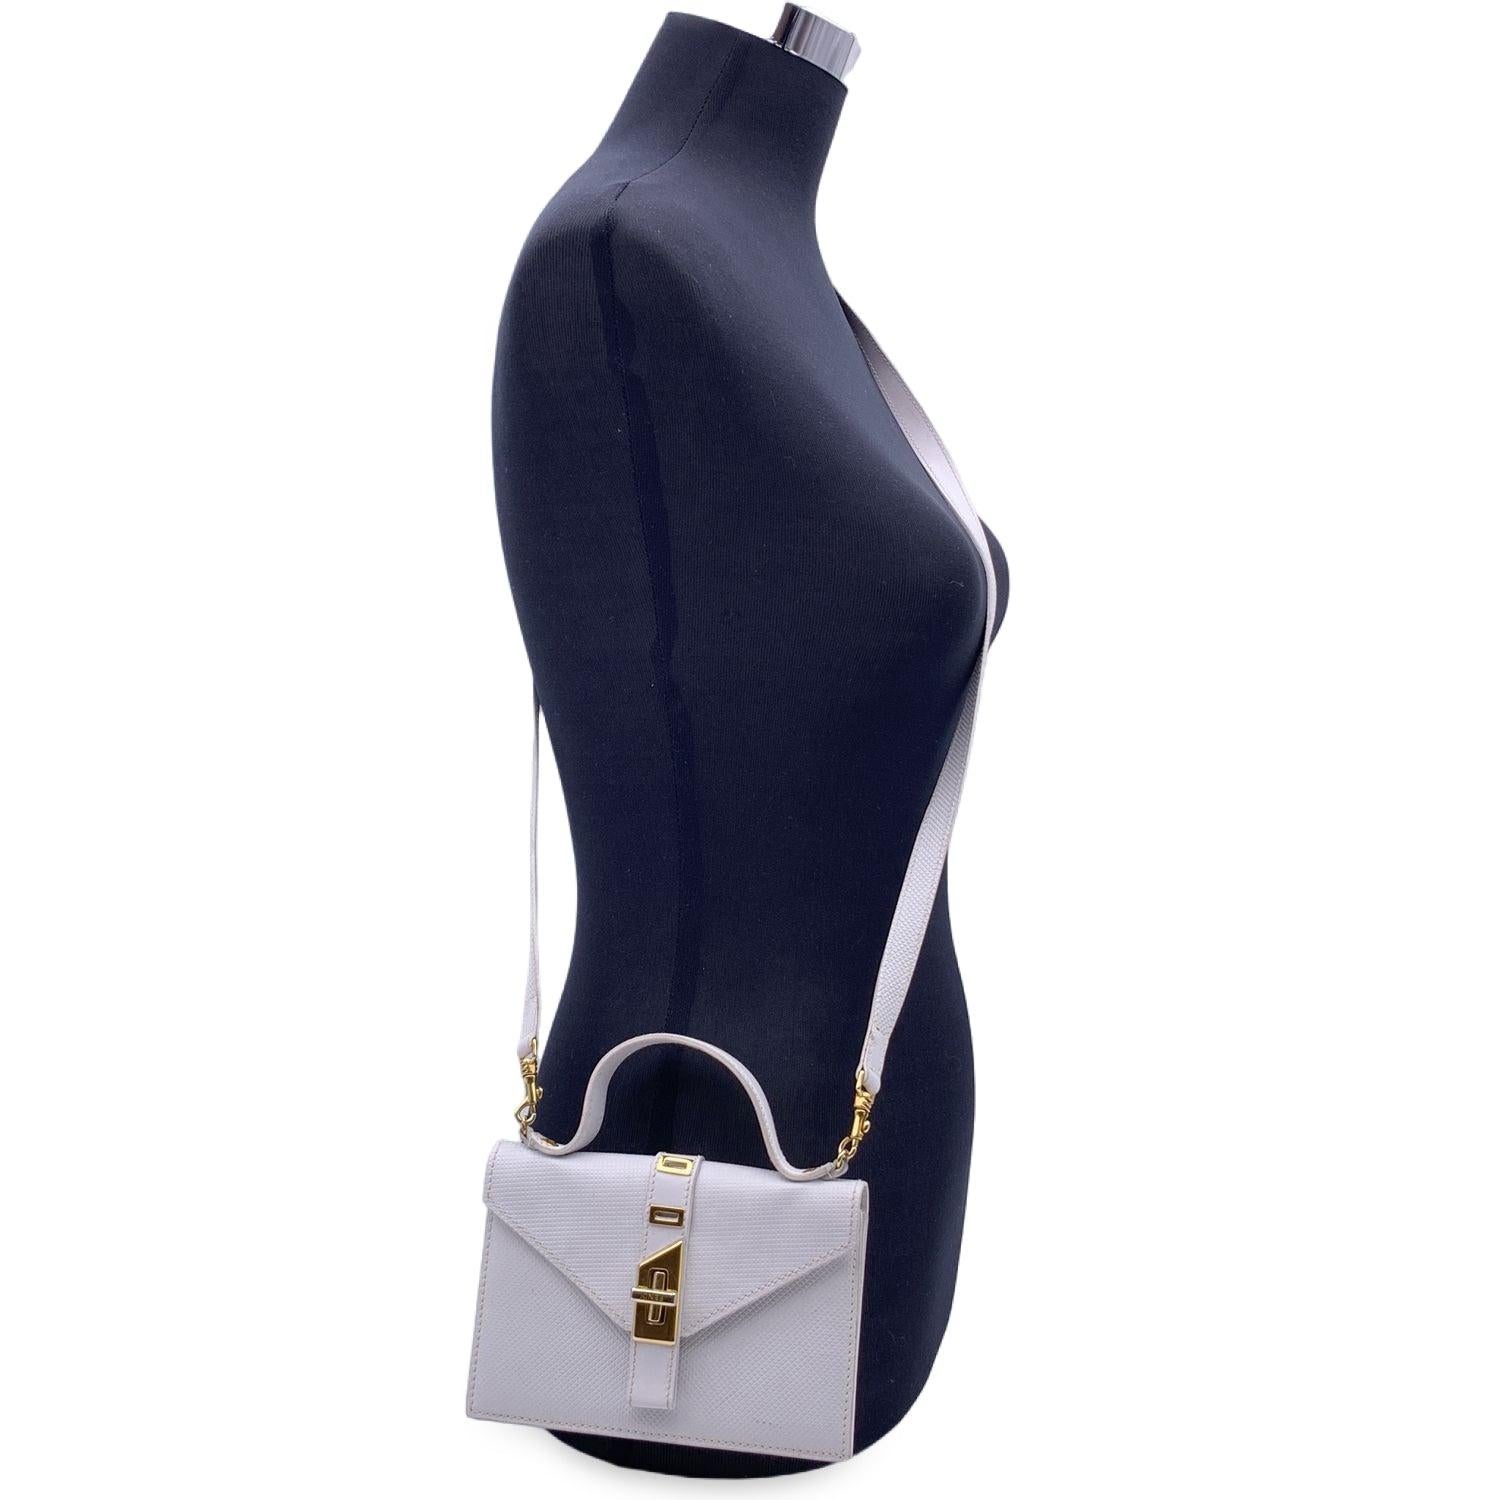 Vintage Fendi Mini-Tasche aus weißem strukturiertem Leder. Can als Handtasche, als Umhängetasche oder als Geldbörse verwendet werden. Klappe mit Drehverschluss. 3 Fächer, 1 Reißverschlussfach und 1 flaches offenes Innenfach. Goldfarbene